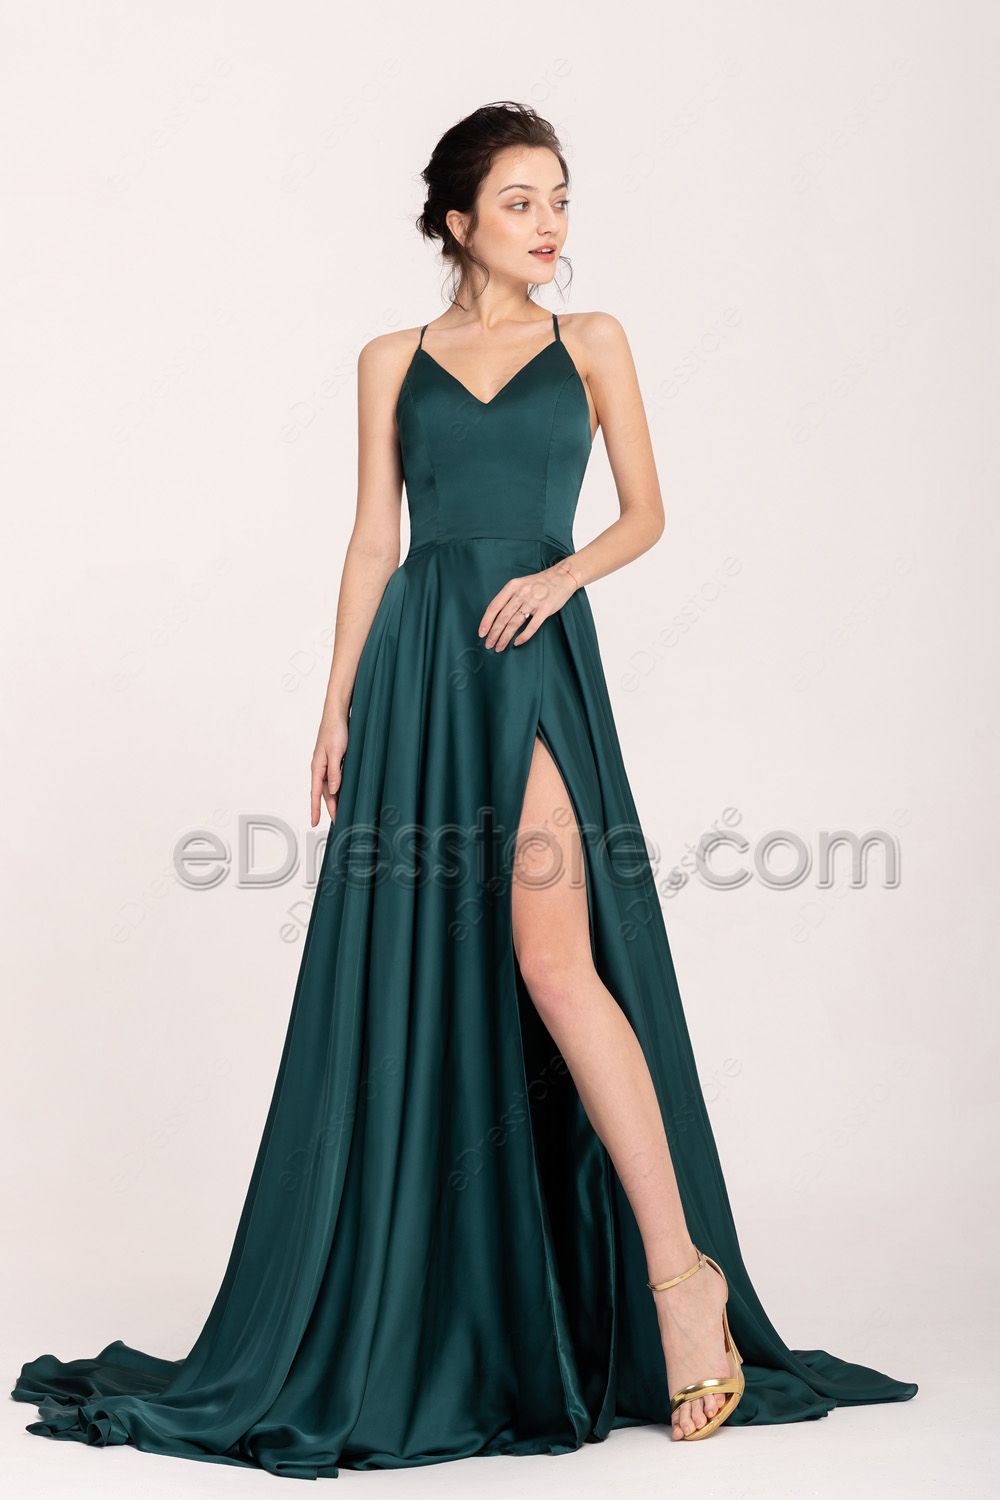 Dark Green Pretty Backless Slitted Prom Dresses Long | eDresstore